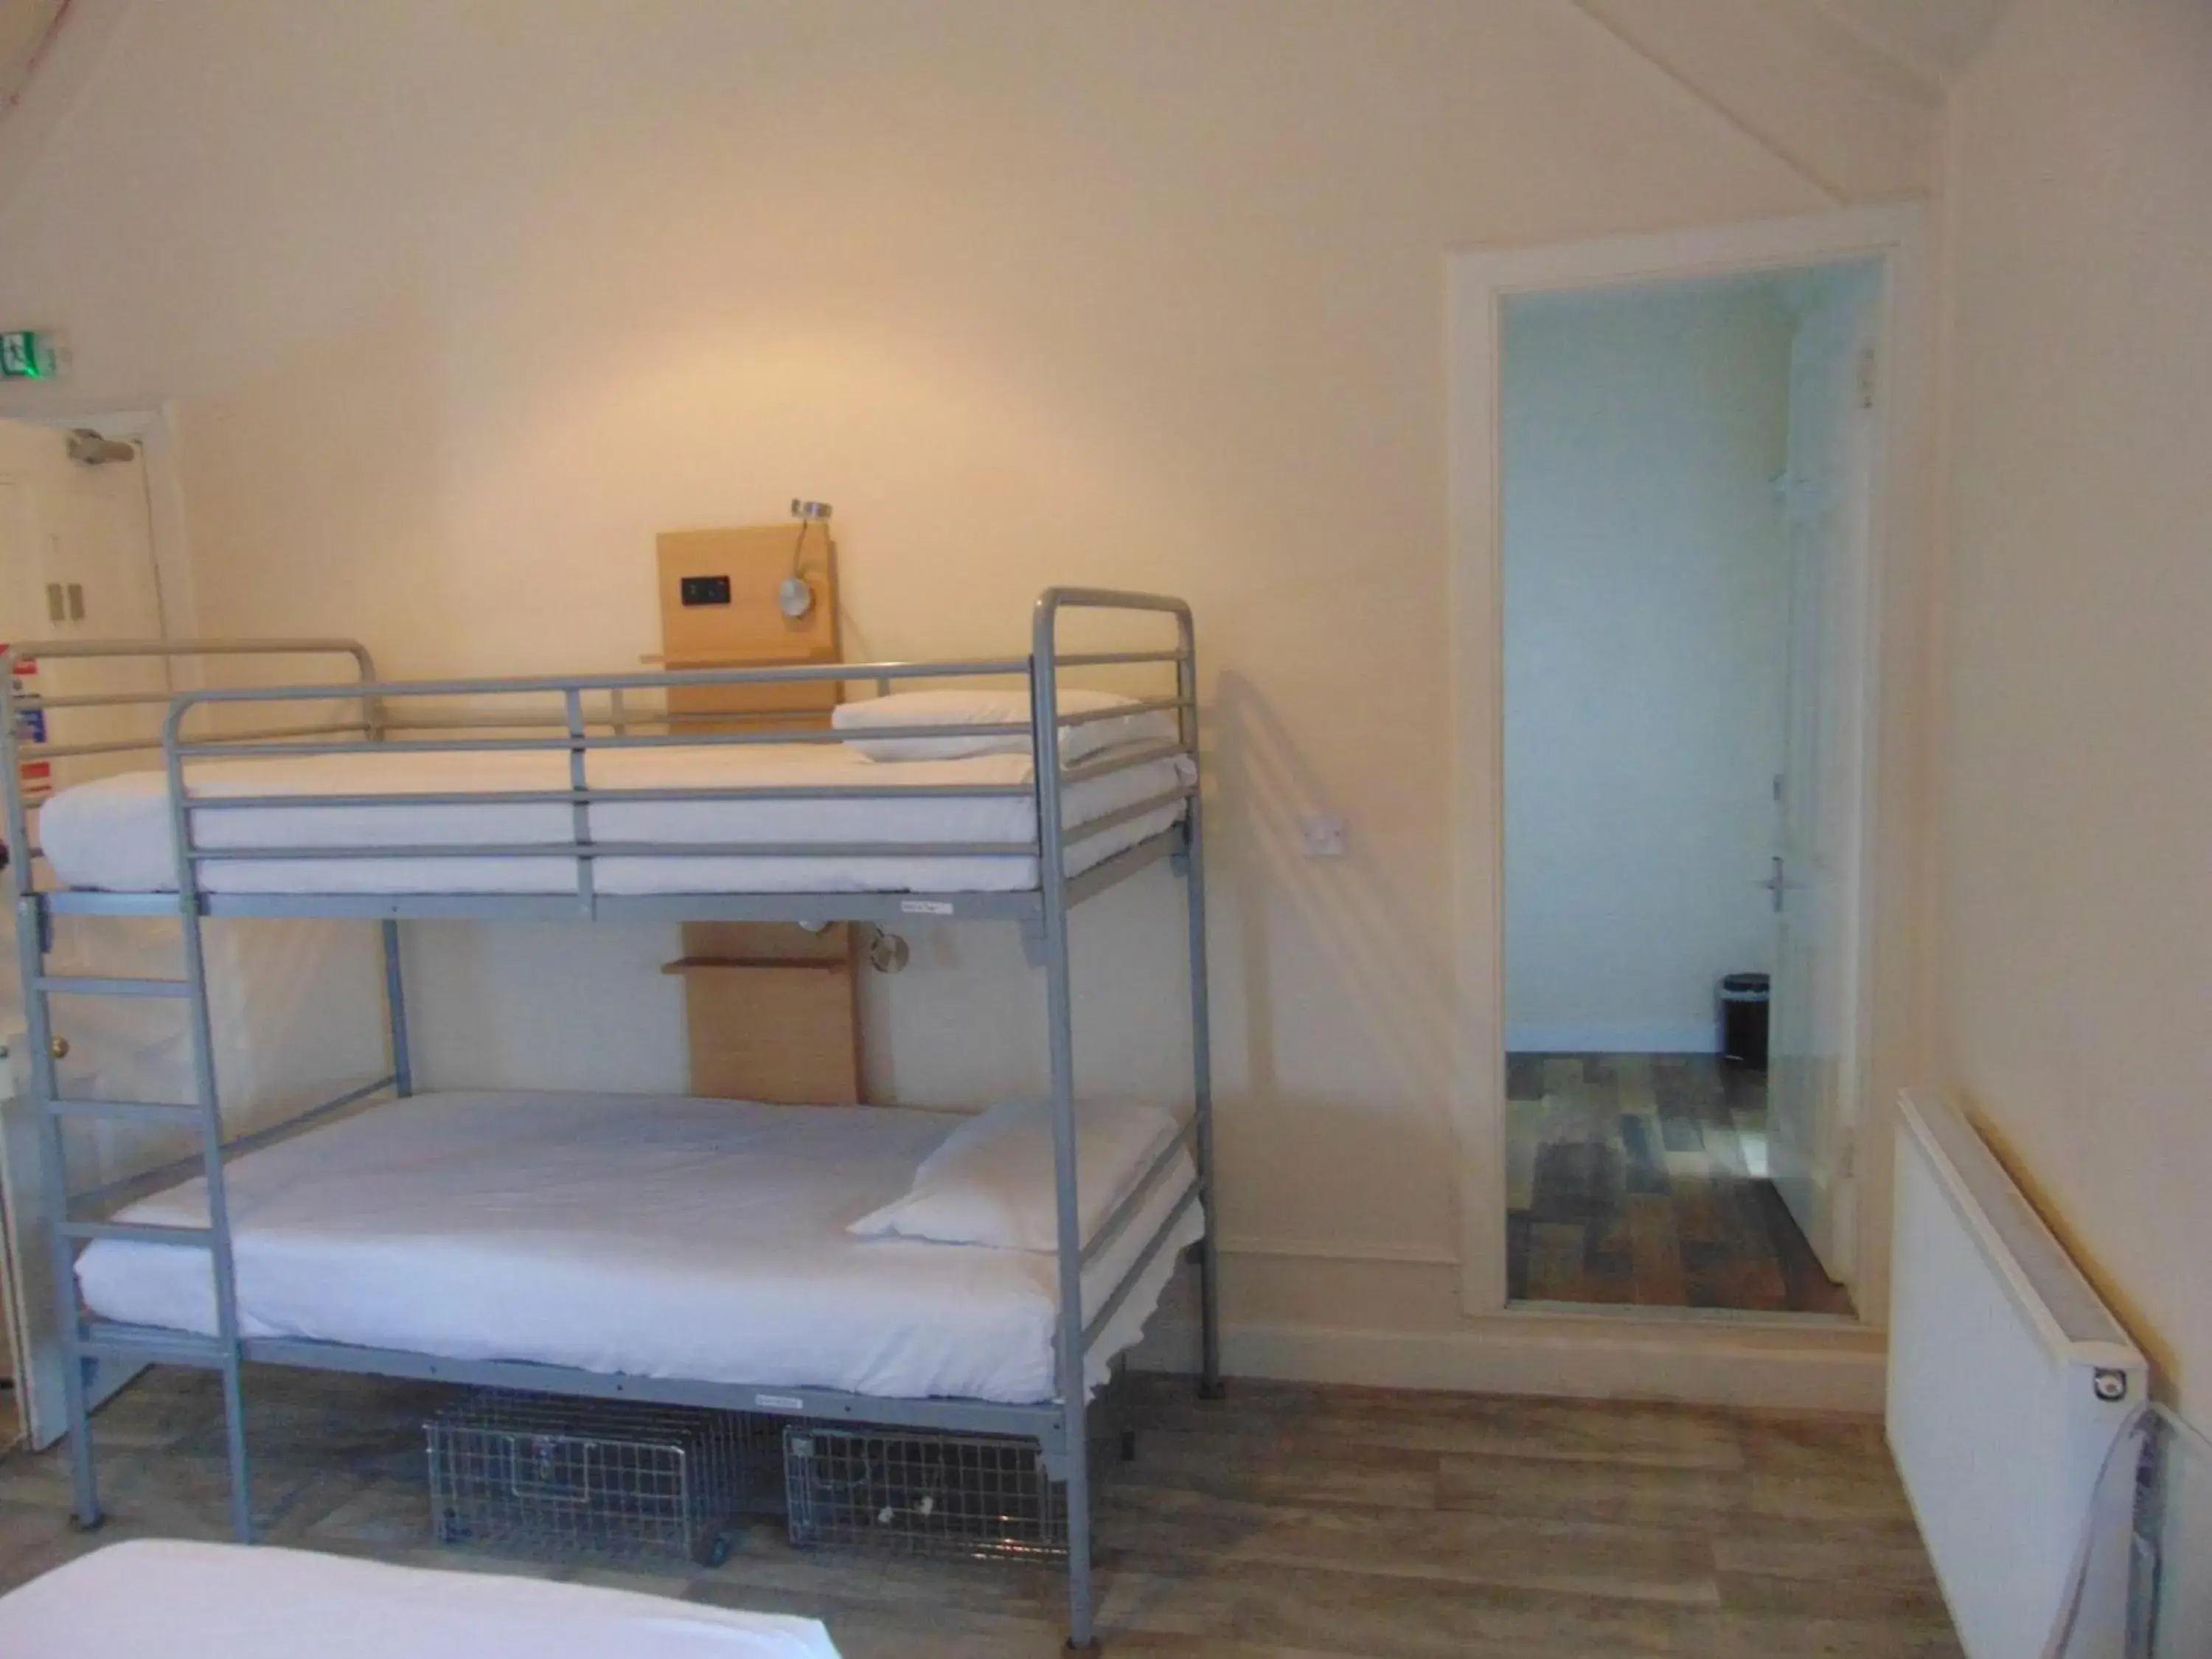 Bunk Bed in Callander Hostel